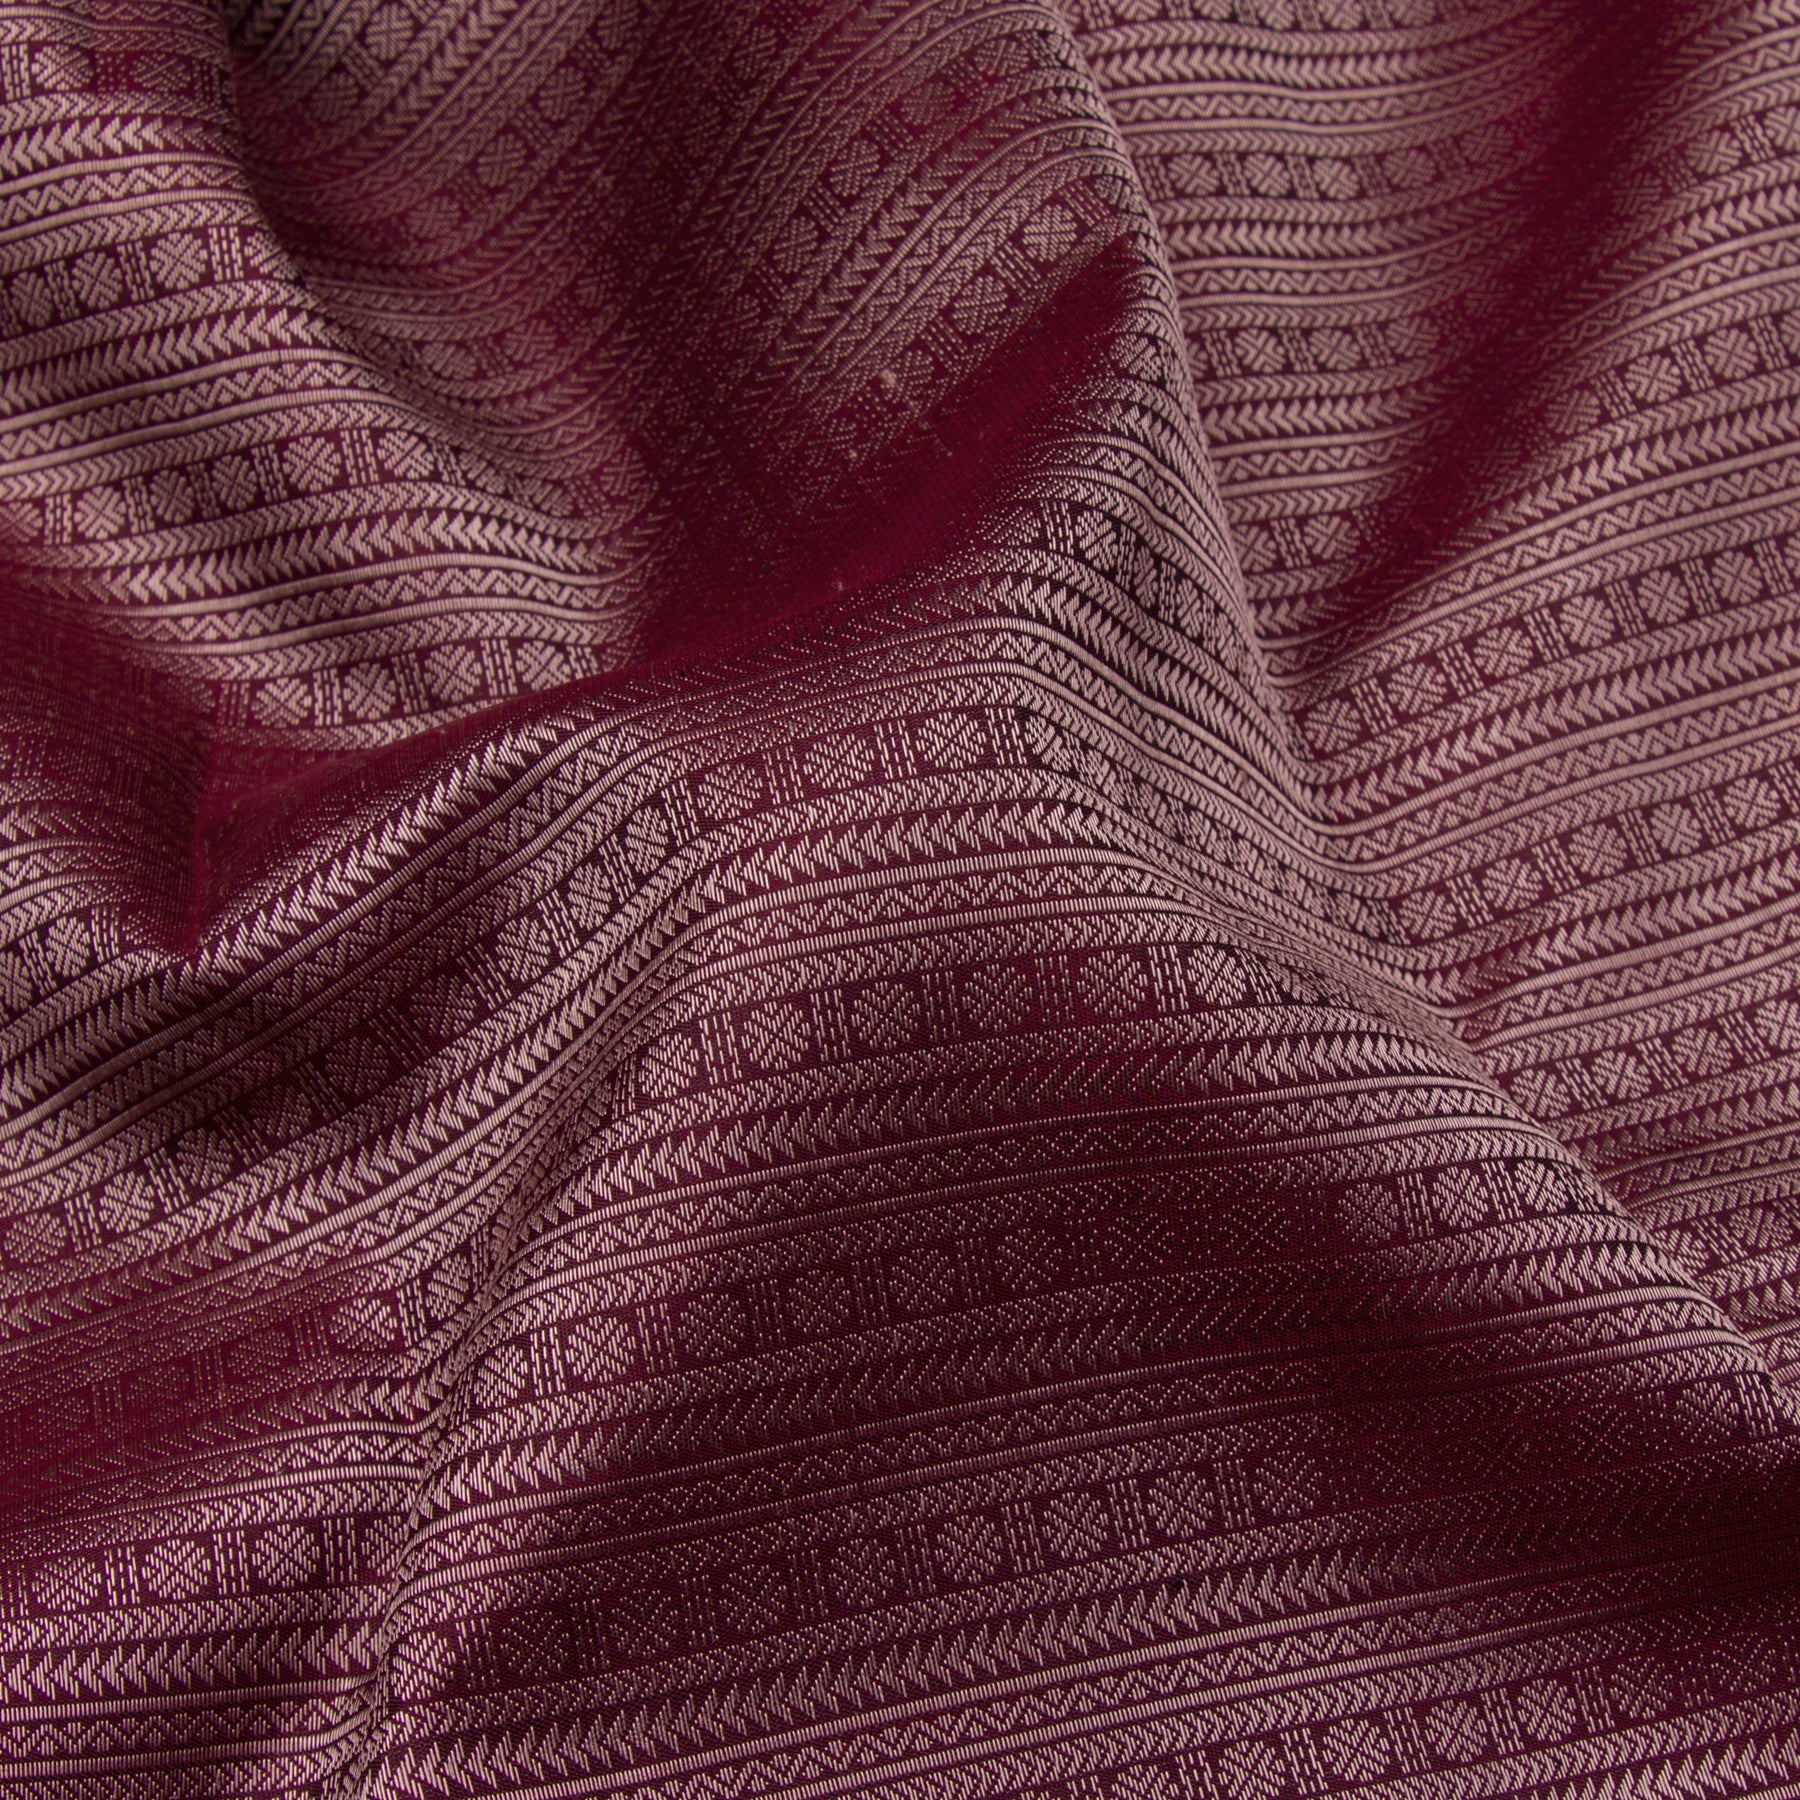 Kanakavalli Kanjivaram Silk Sari 23-110-HS001-13562 - Fabric View